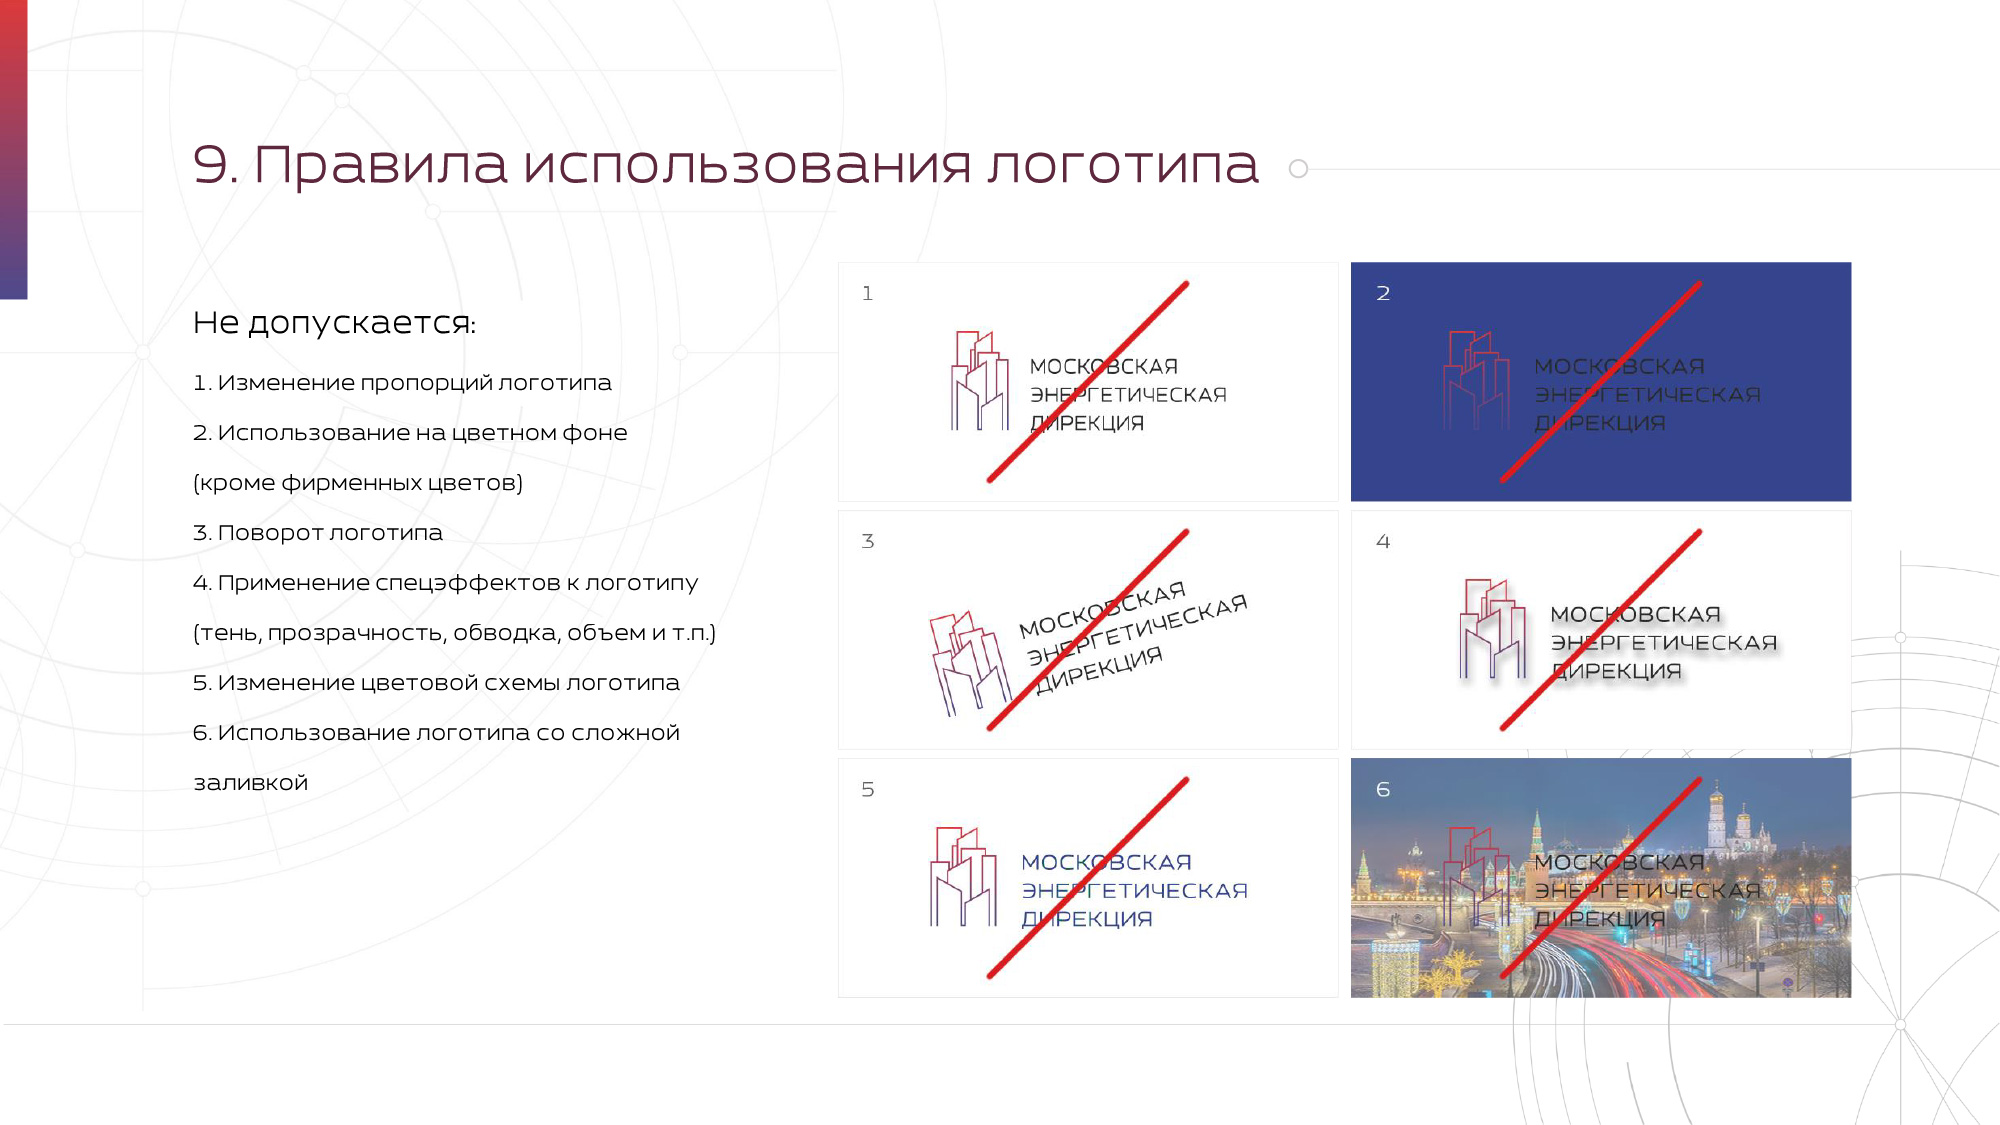 Логобук Московская Энергетическая Дирекция